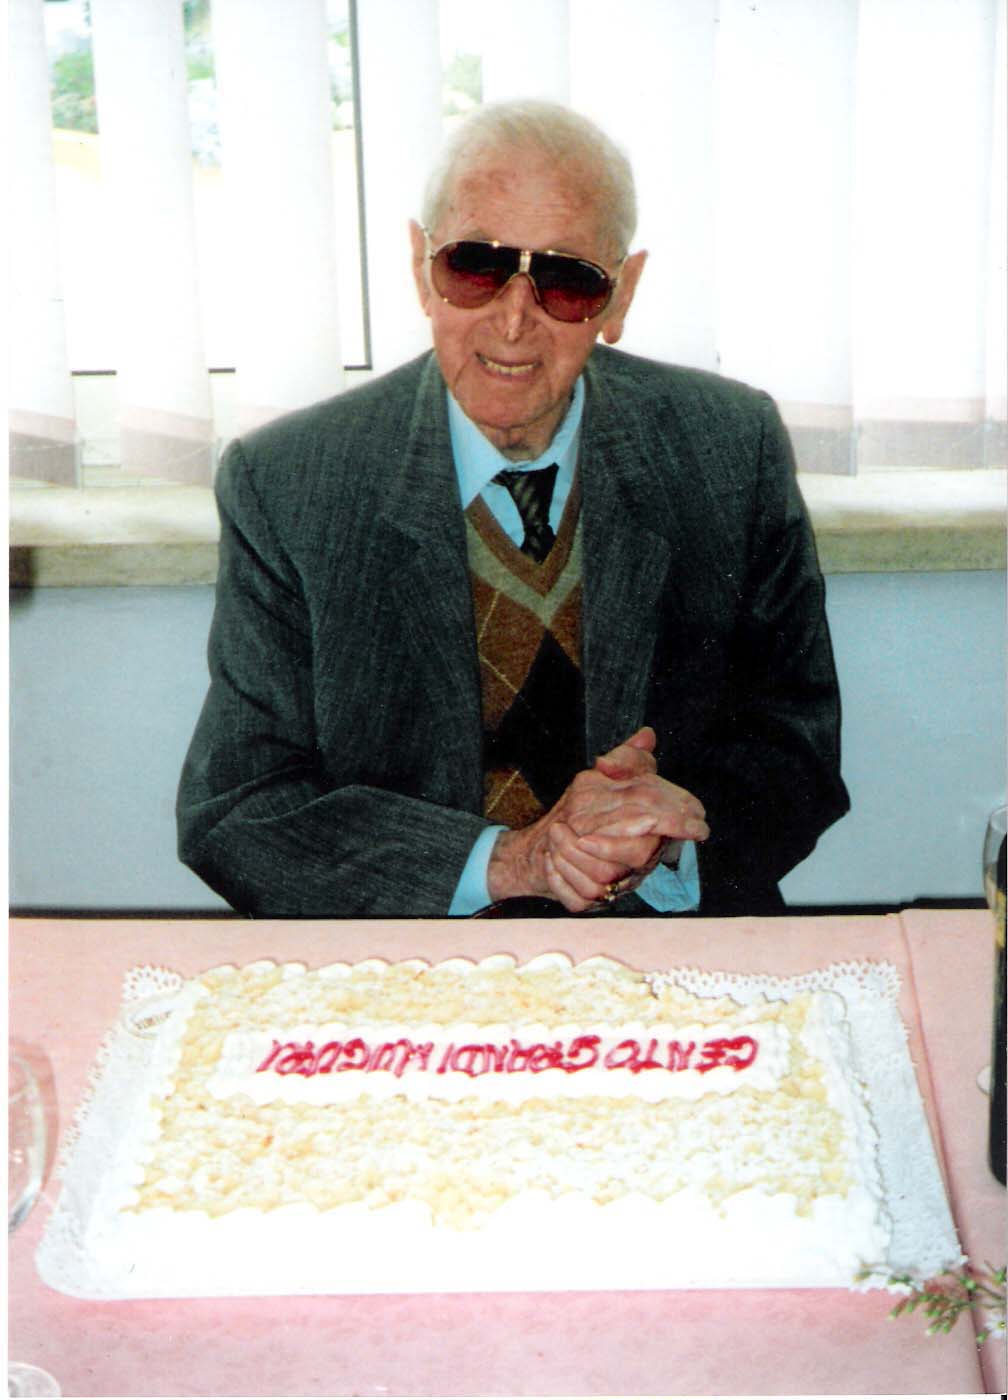 2002 - Luigi Davide di Nicola